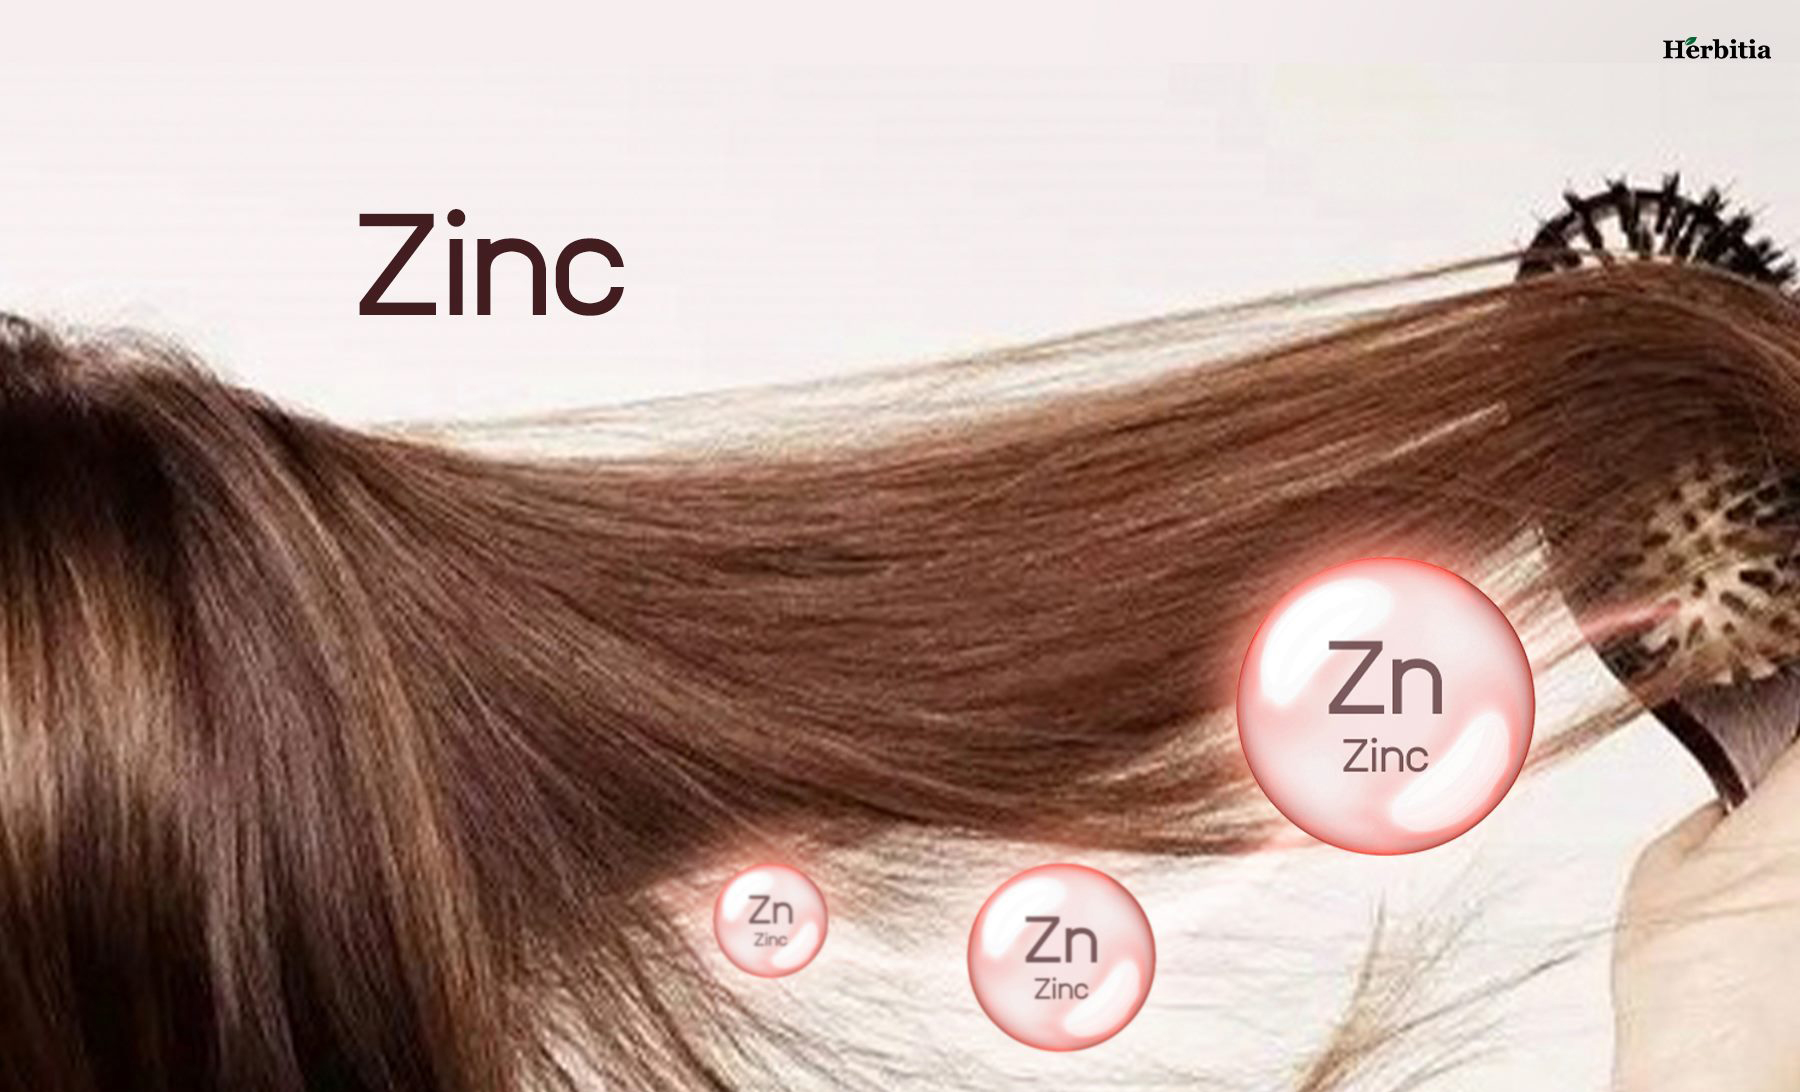 zinc : ป้องกันผมขาดหลุดร่วง แก้ปัญหาผมบาง